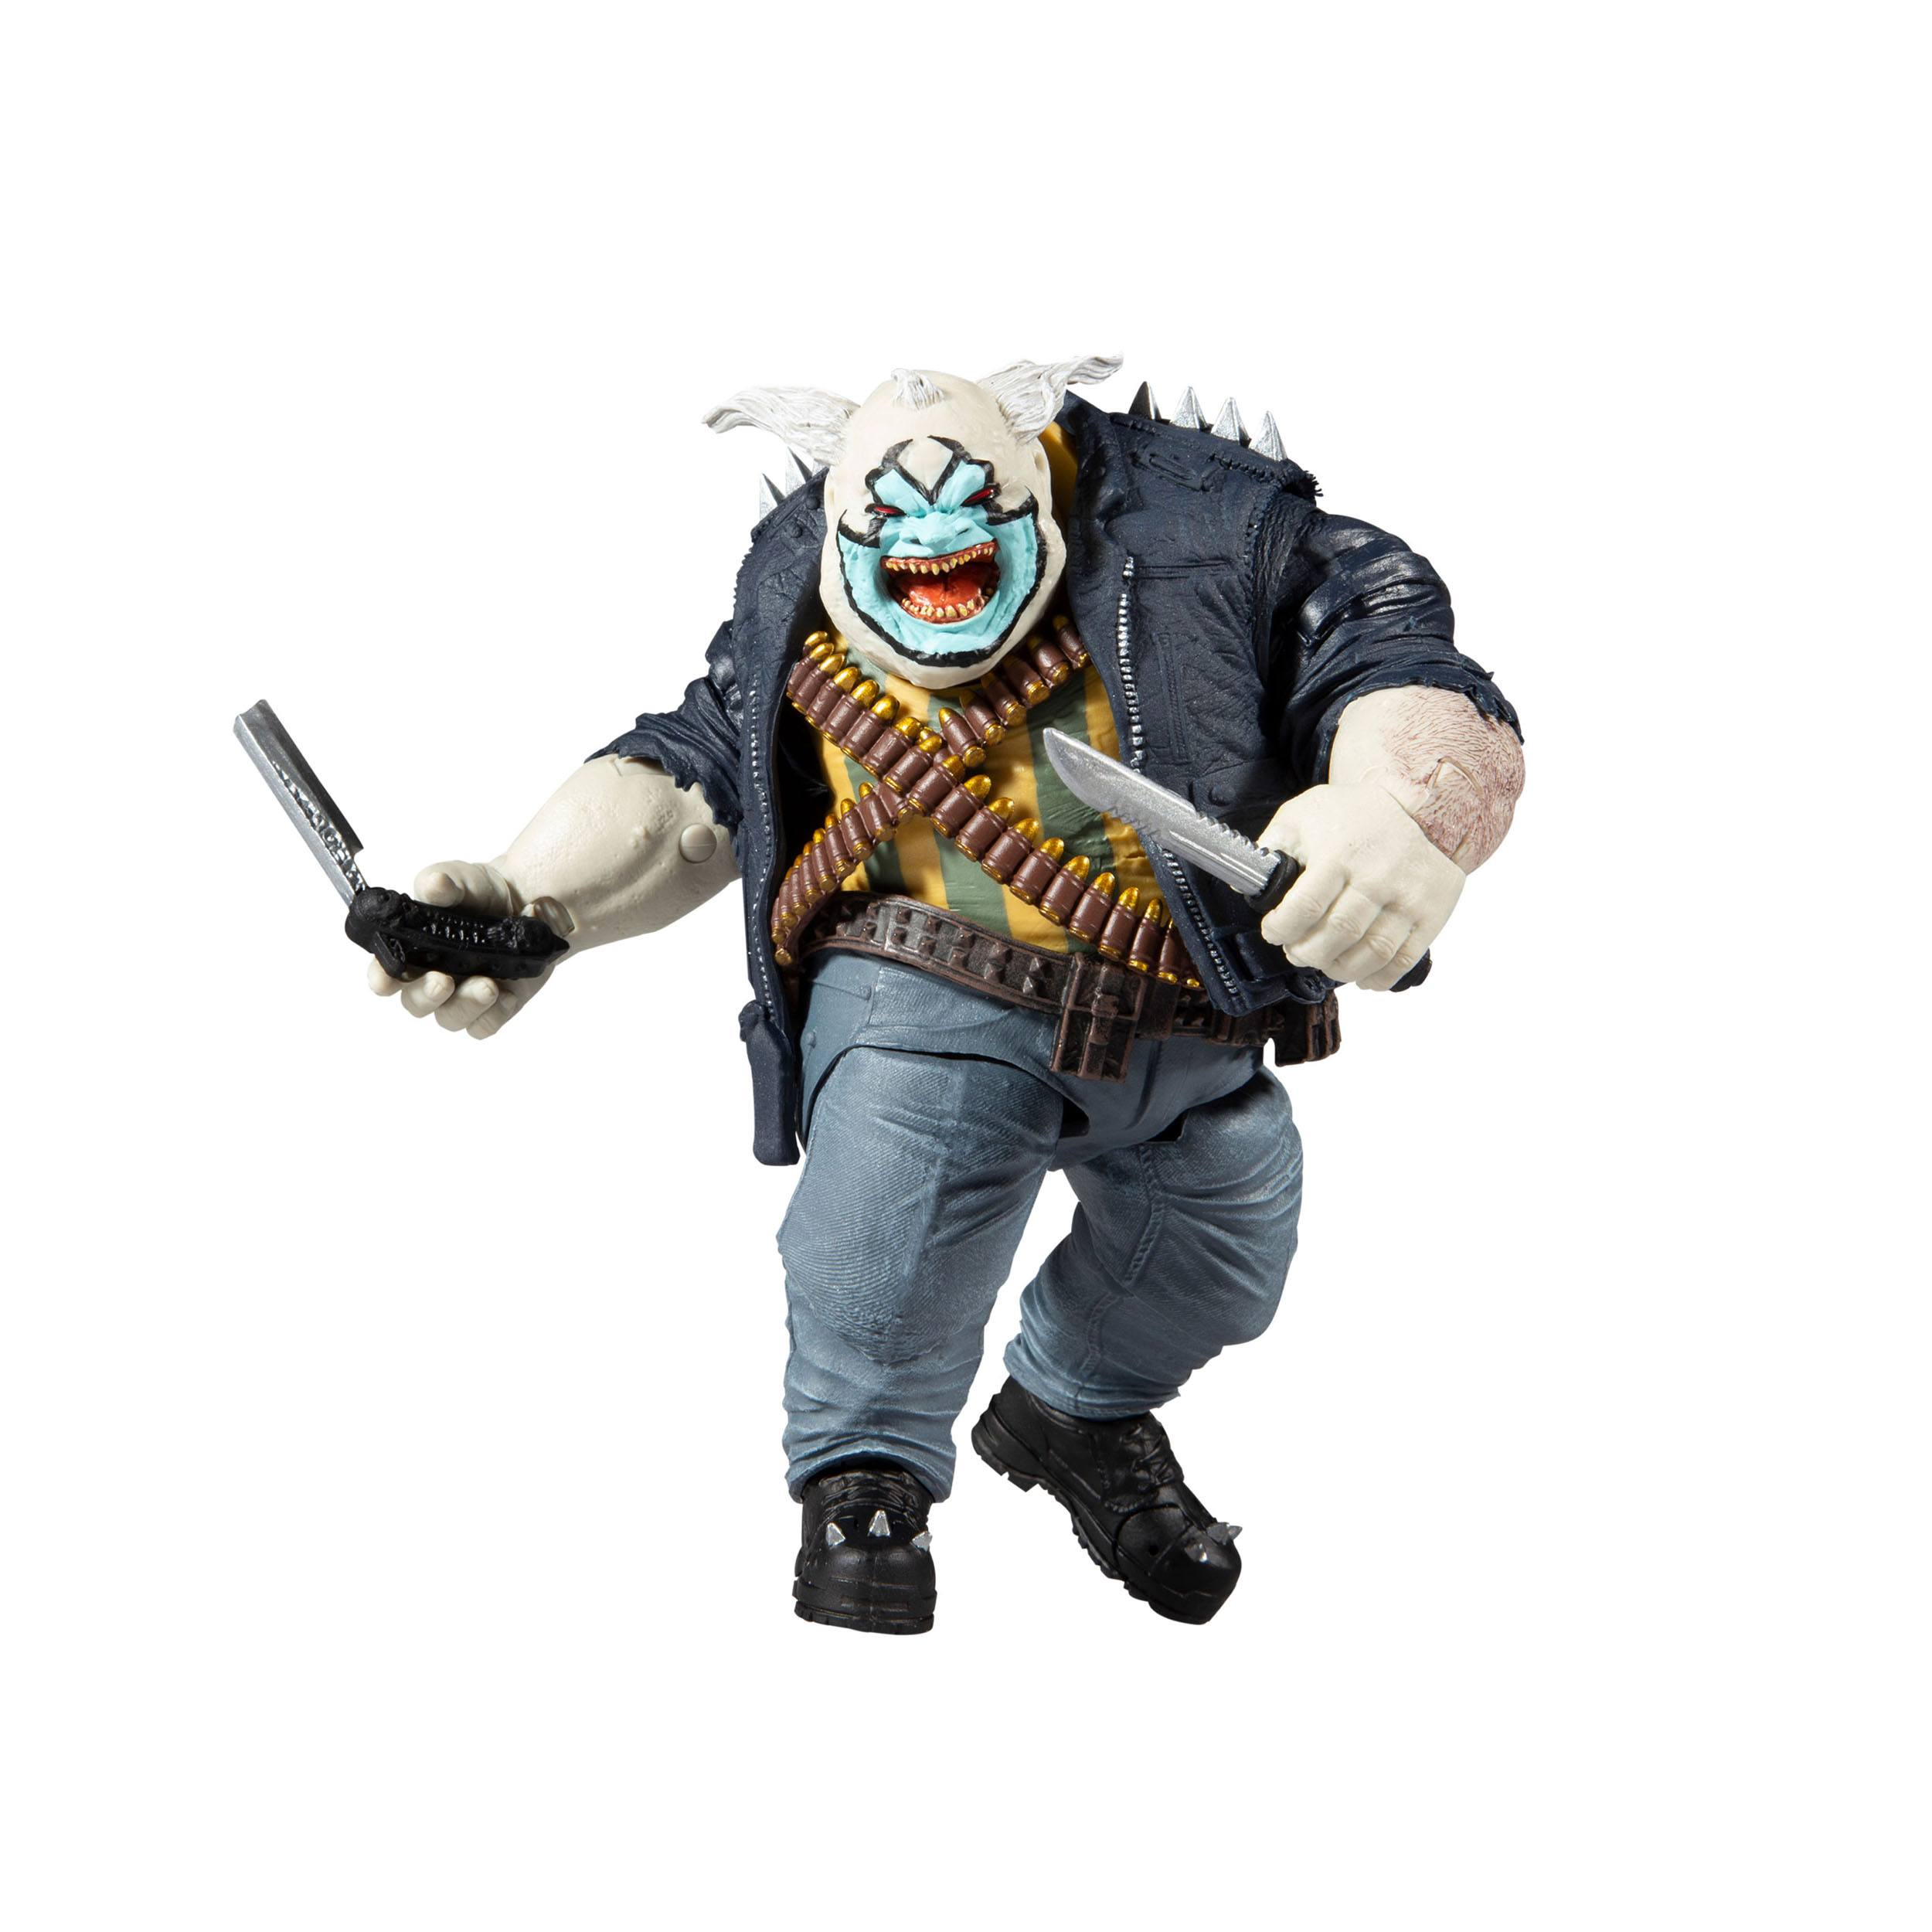 The MCFARLANE Figur: Action 18 Spawn Actionfigur Clown TOYS cm